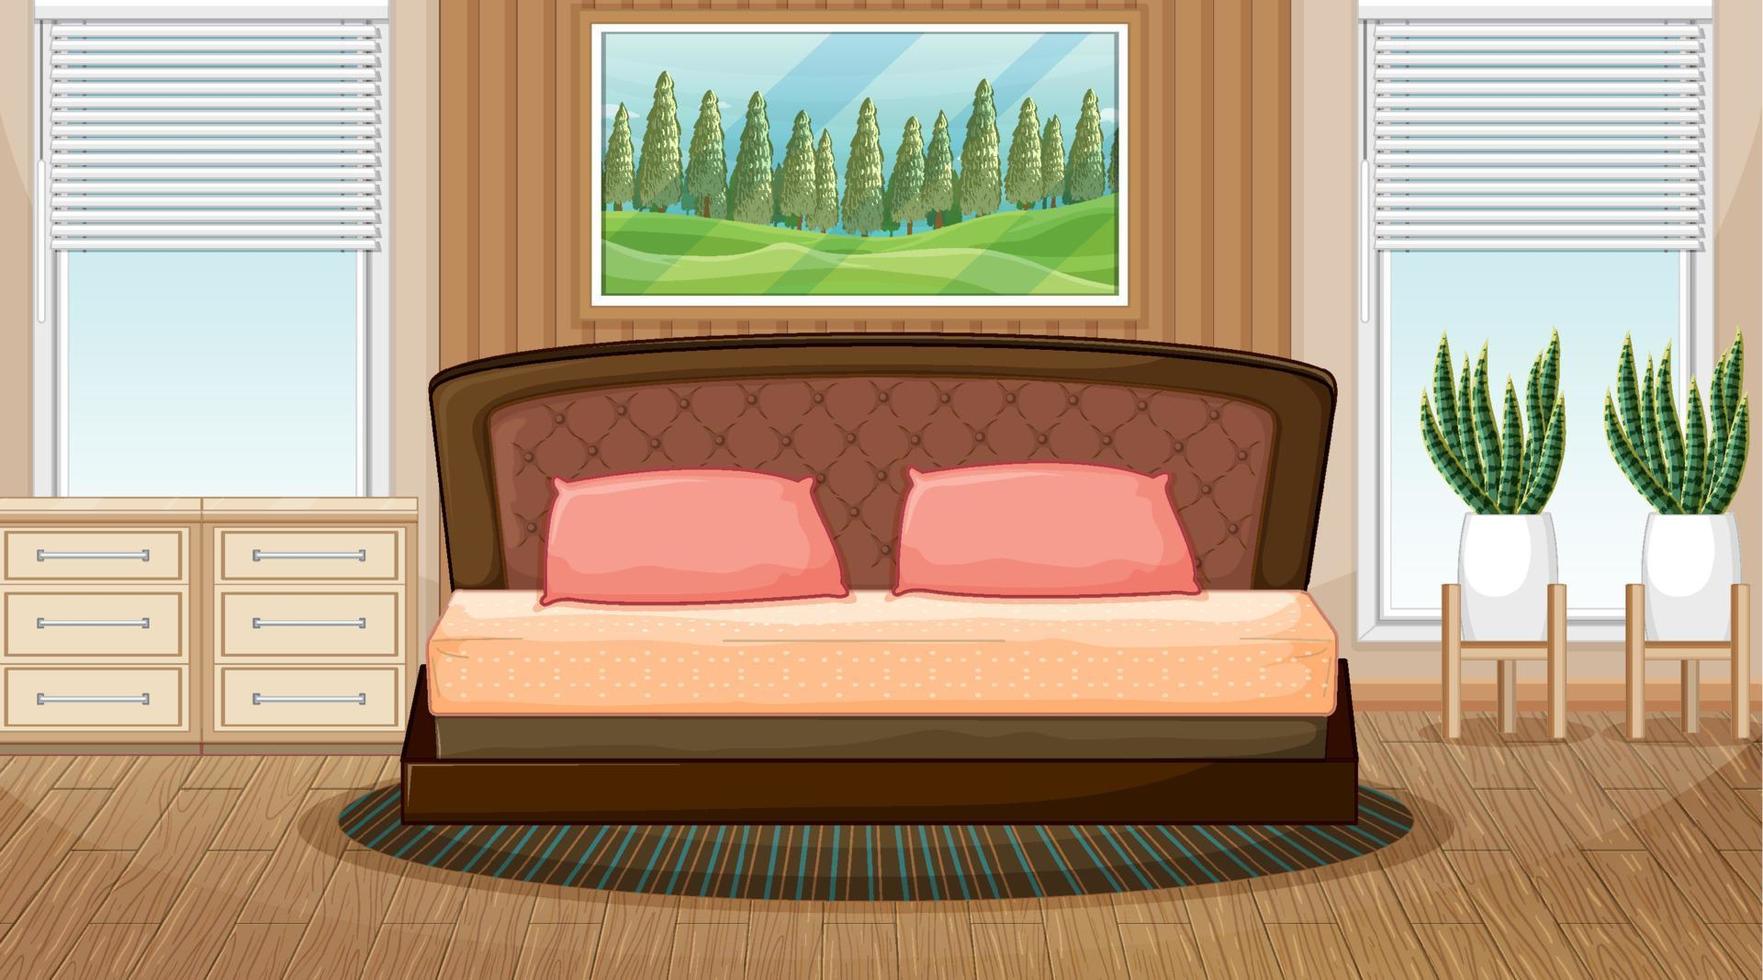 Escena de dormitorio vacío con objetos de dormitorio y decoración de interiores. vector